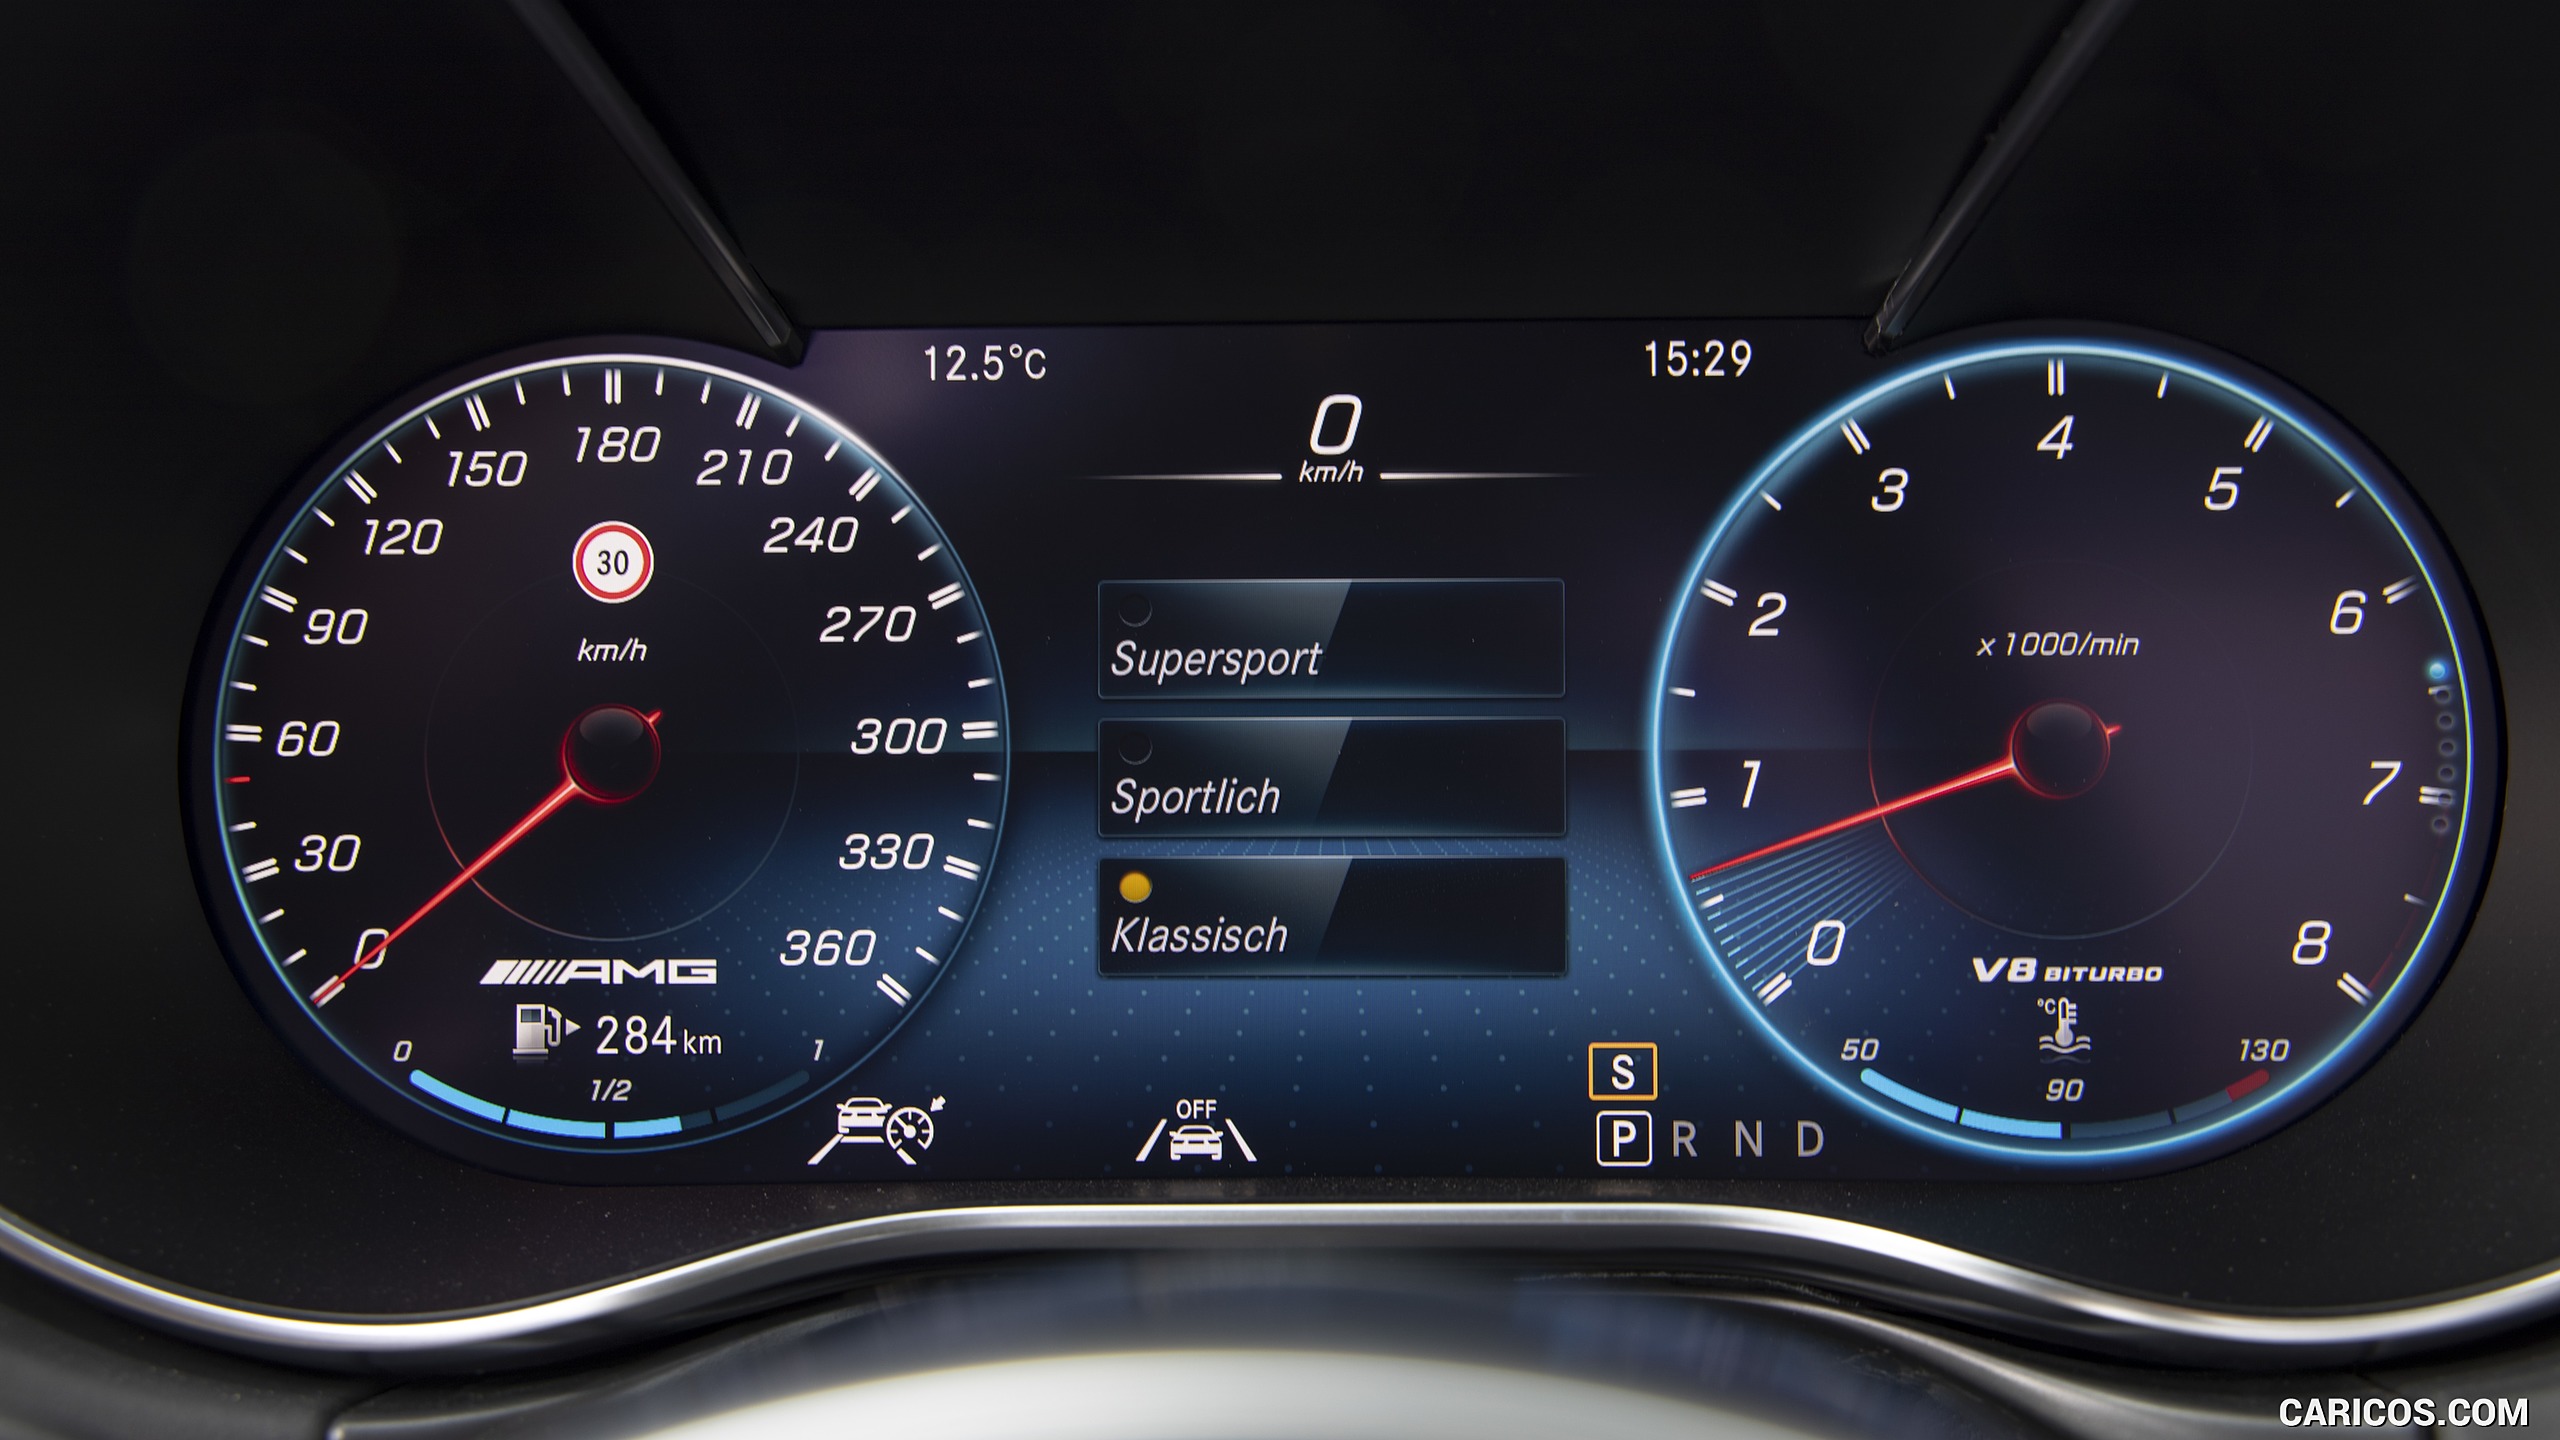 2020 Mercedes-AMG GT S Roadster - Digital Instrument Cluster, #109 of 328